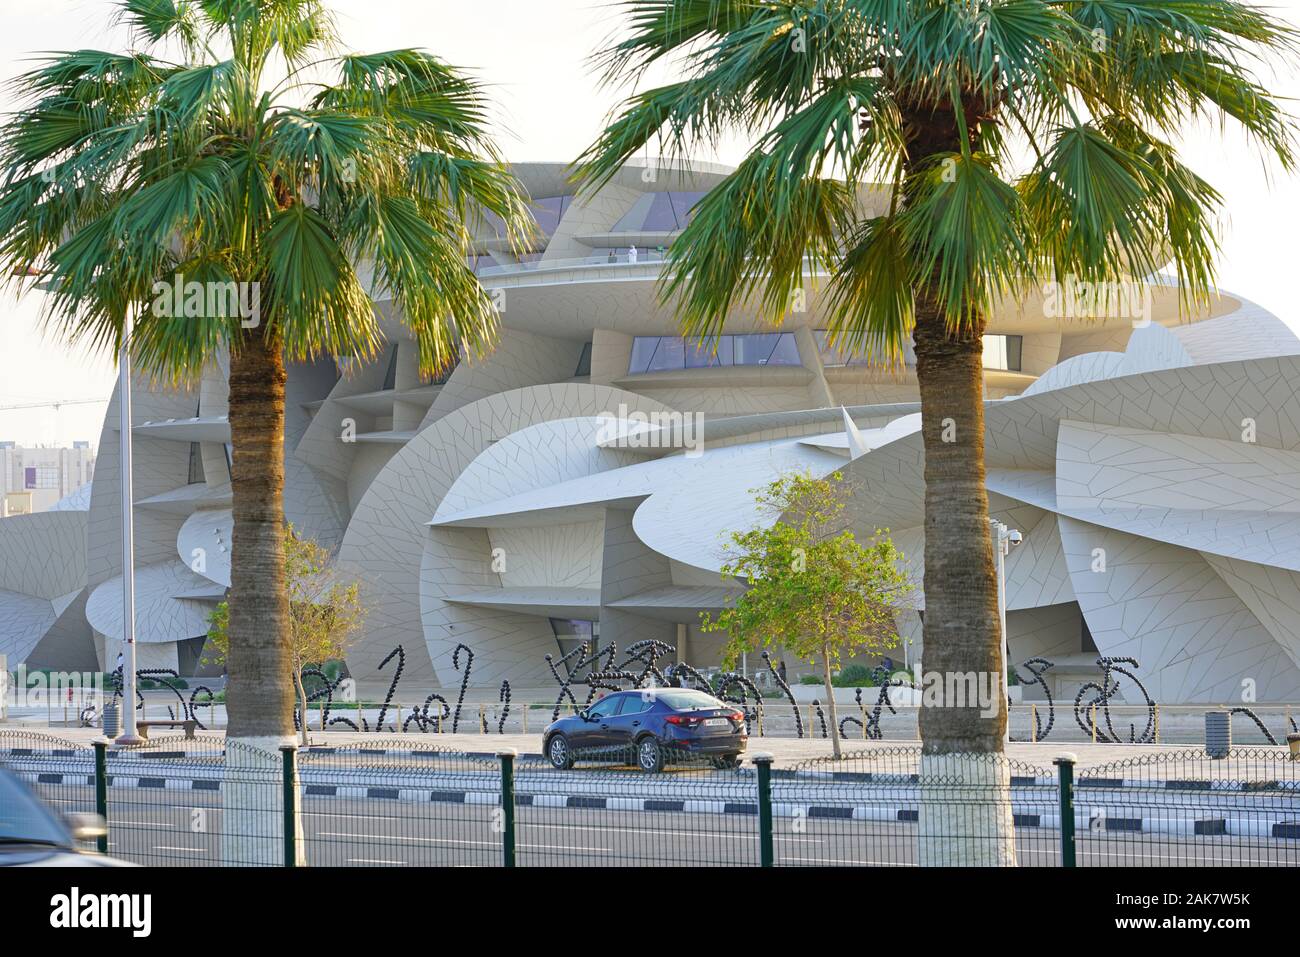 DOHA, Qatar-11 Dez 2019 - Ausblick auf das neue Museum der Qatar Gebäude vom Architekten Jean Nouvel entworfen, als Desert Rose, im Jahr 2019 eröffnet. Stockfoto